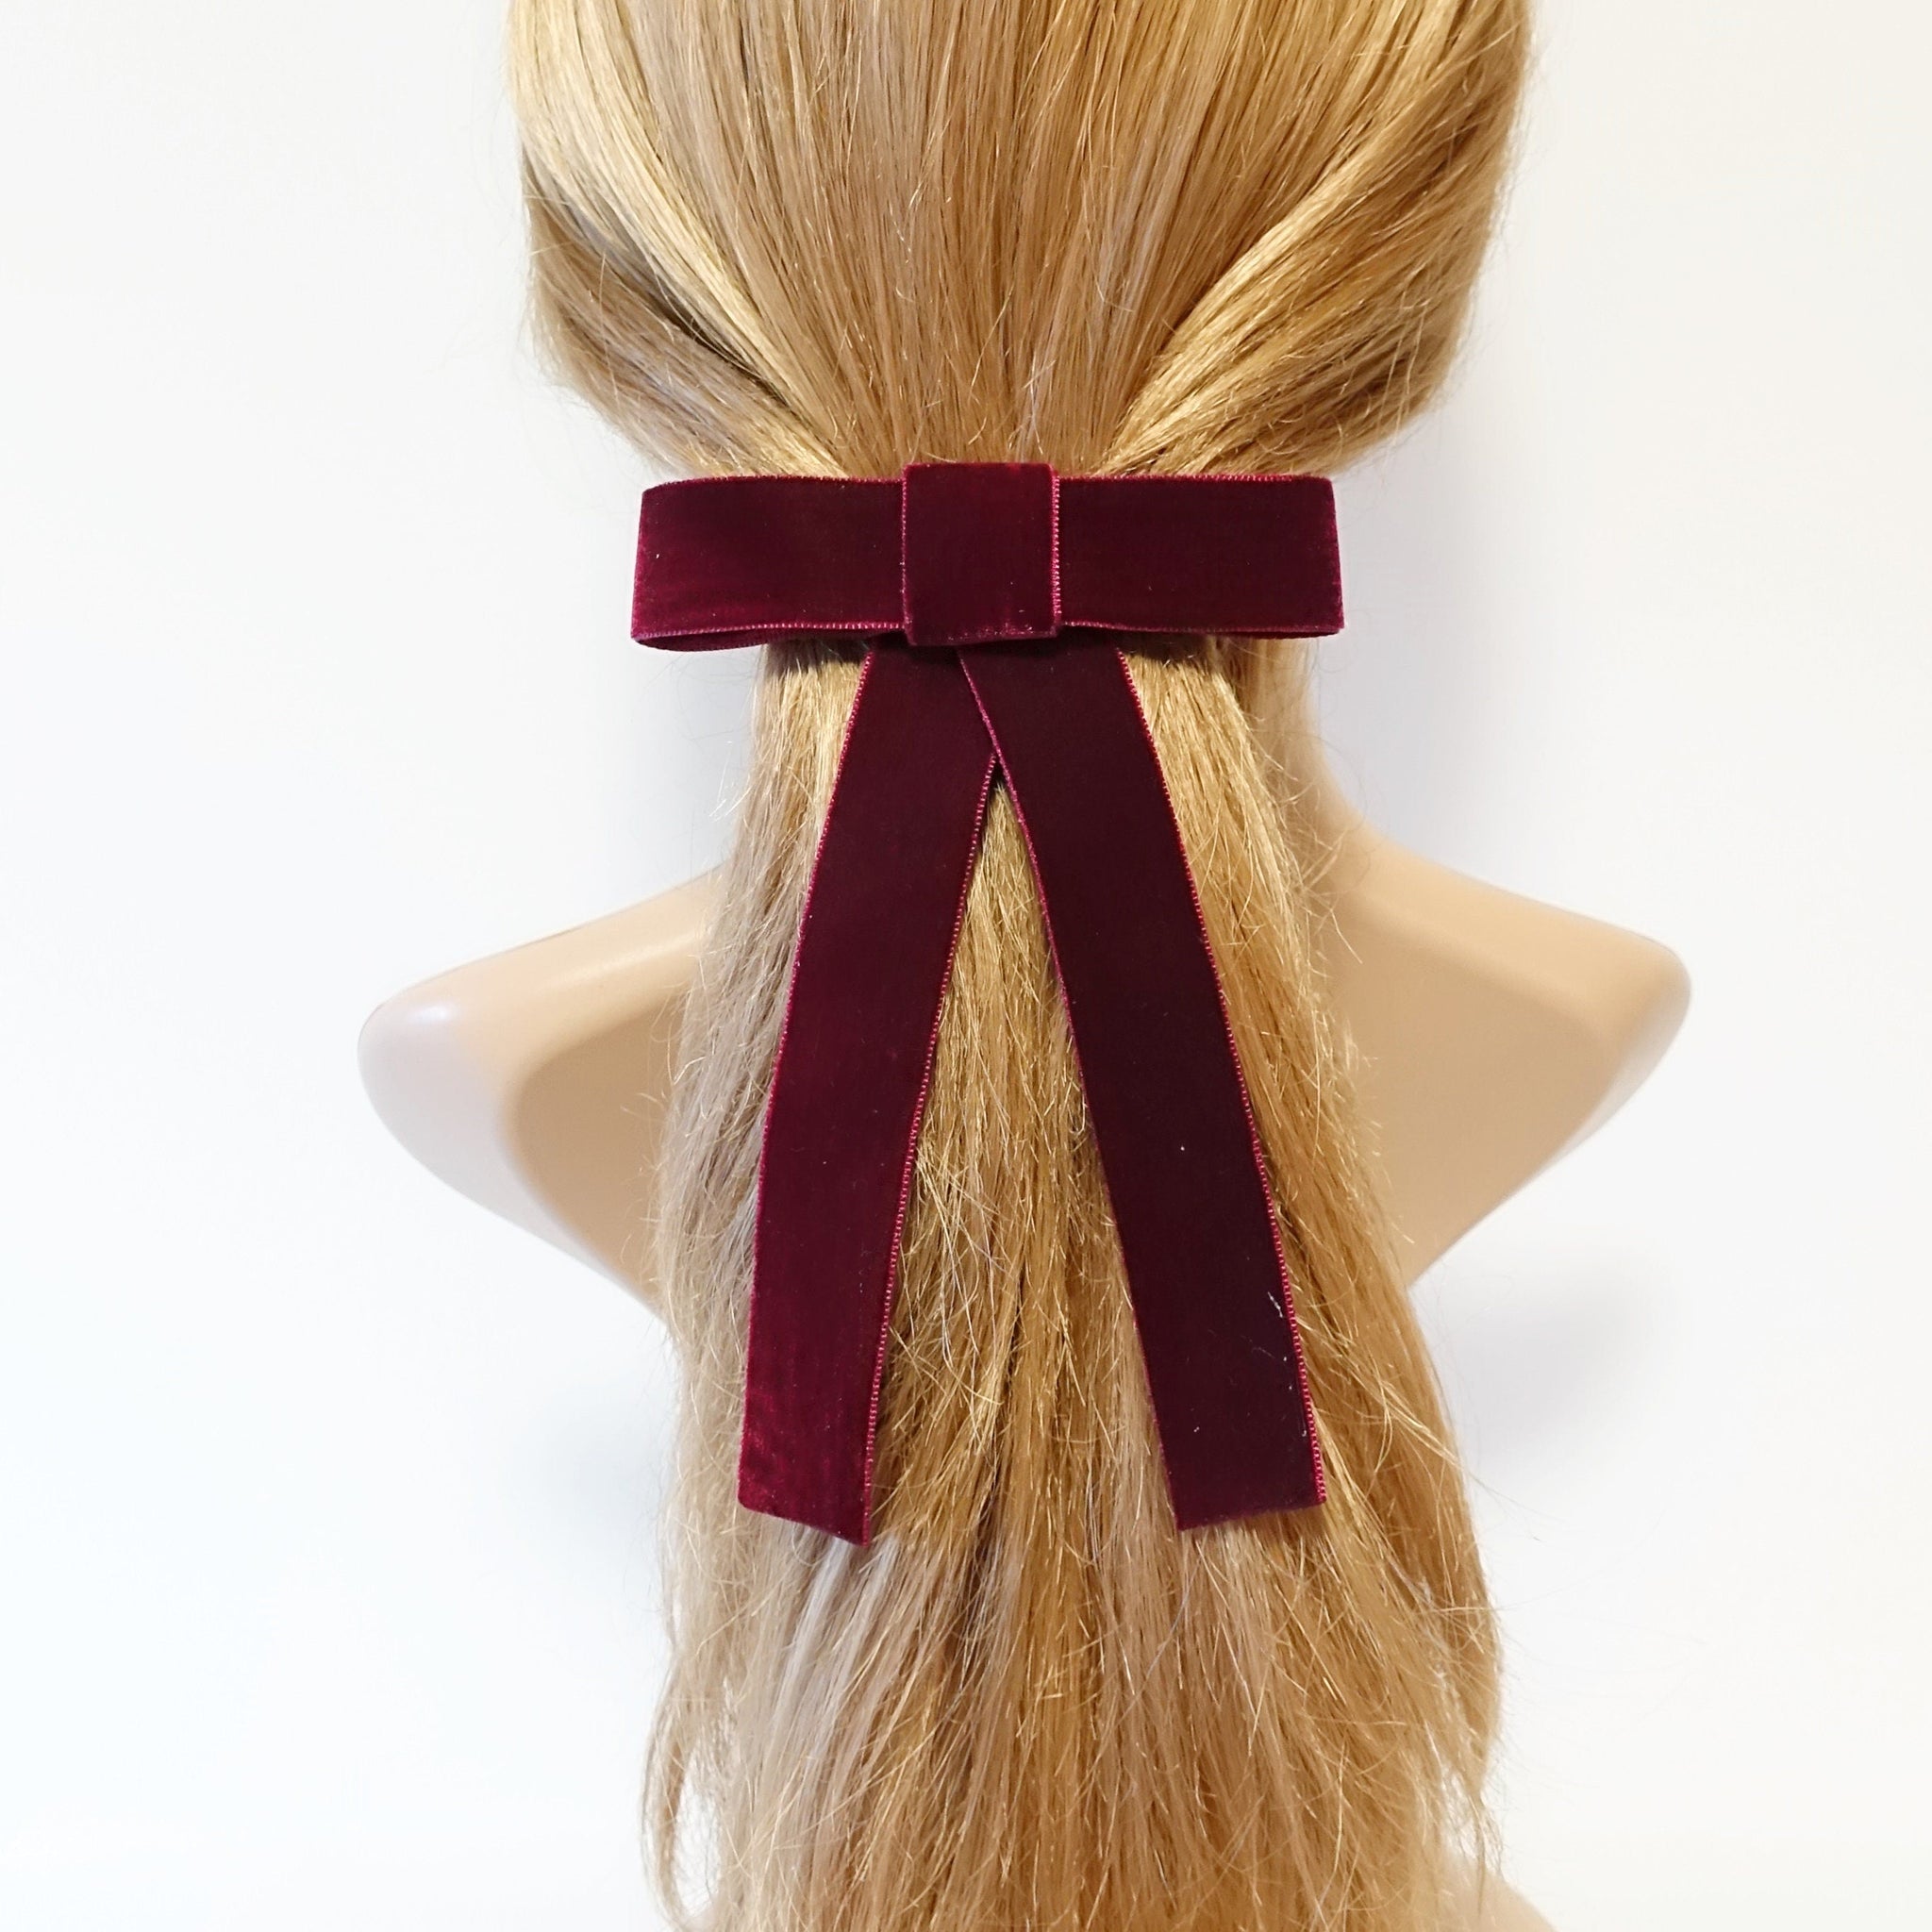 veryshine.com Barrette (Bow) Red wine Velvet bow simple stylish black velvet hair accessory 0.98 inch width